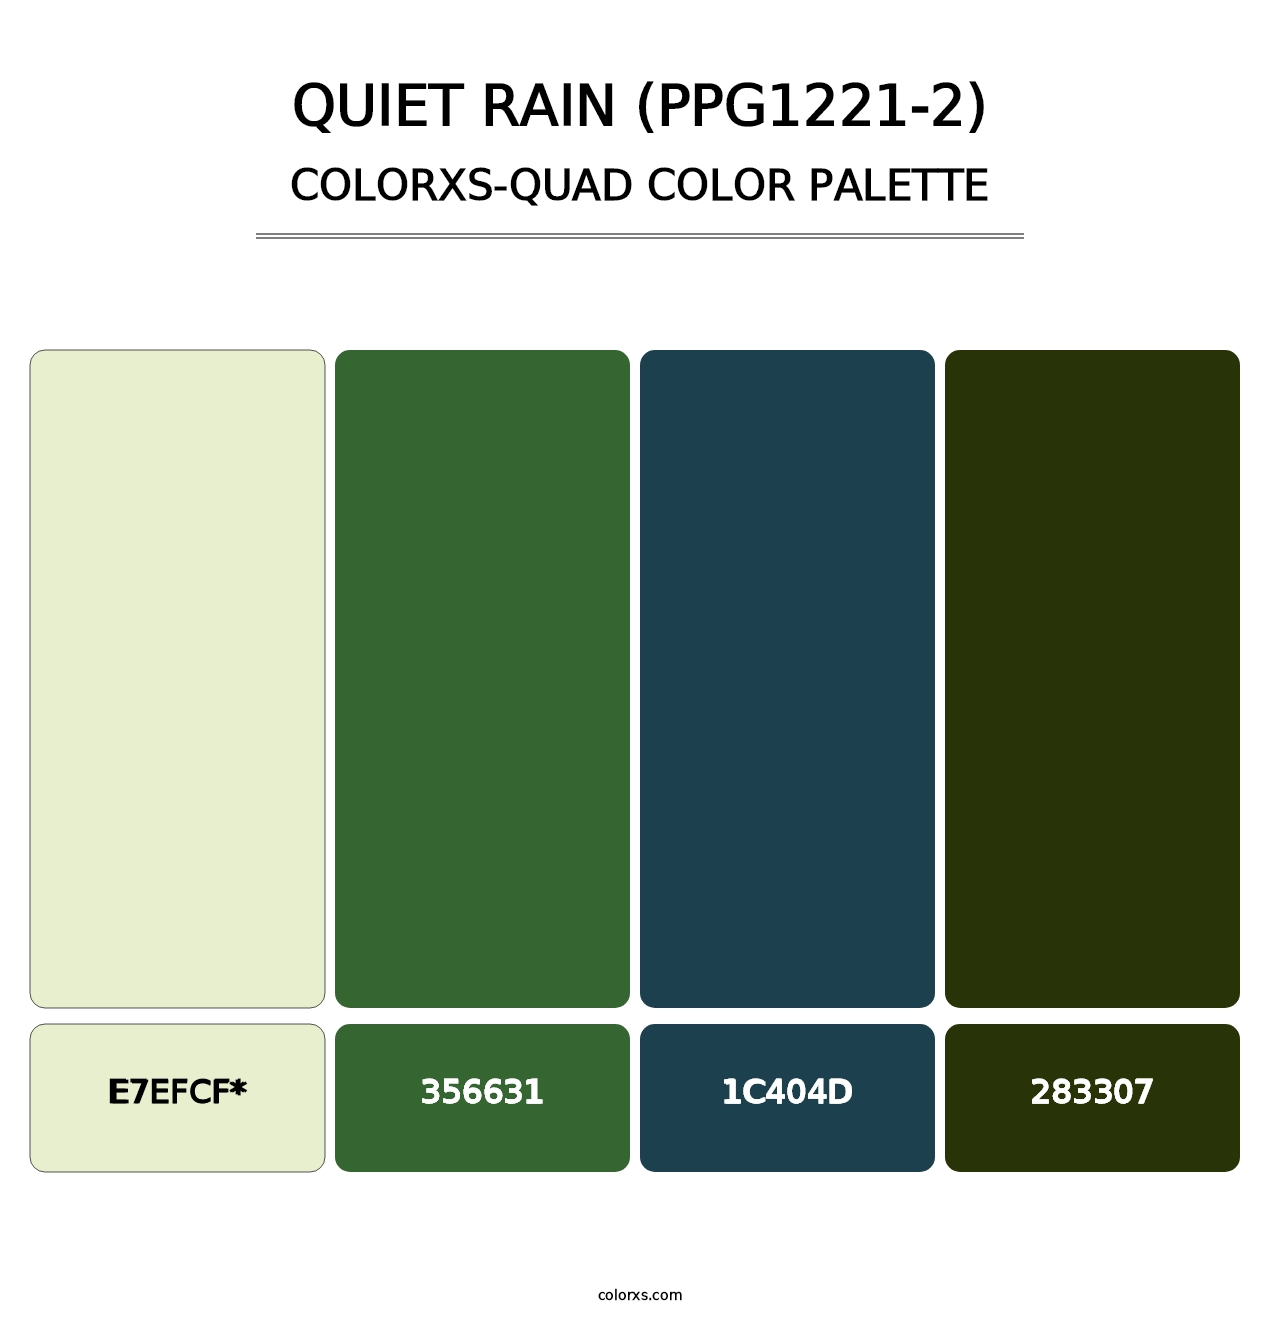 Quiet Rain (PPG1221-2) - Colorxs Quad Palette